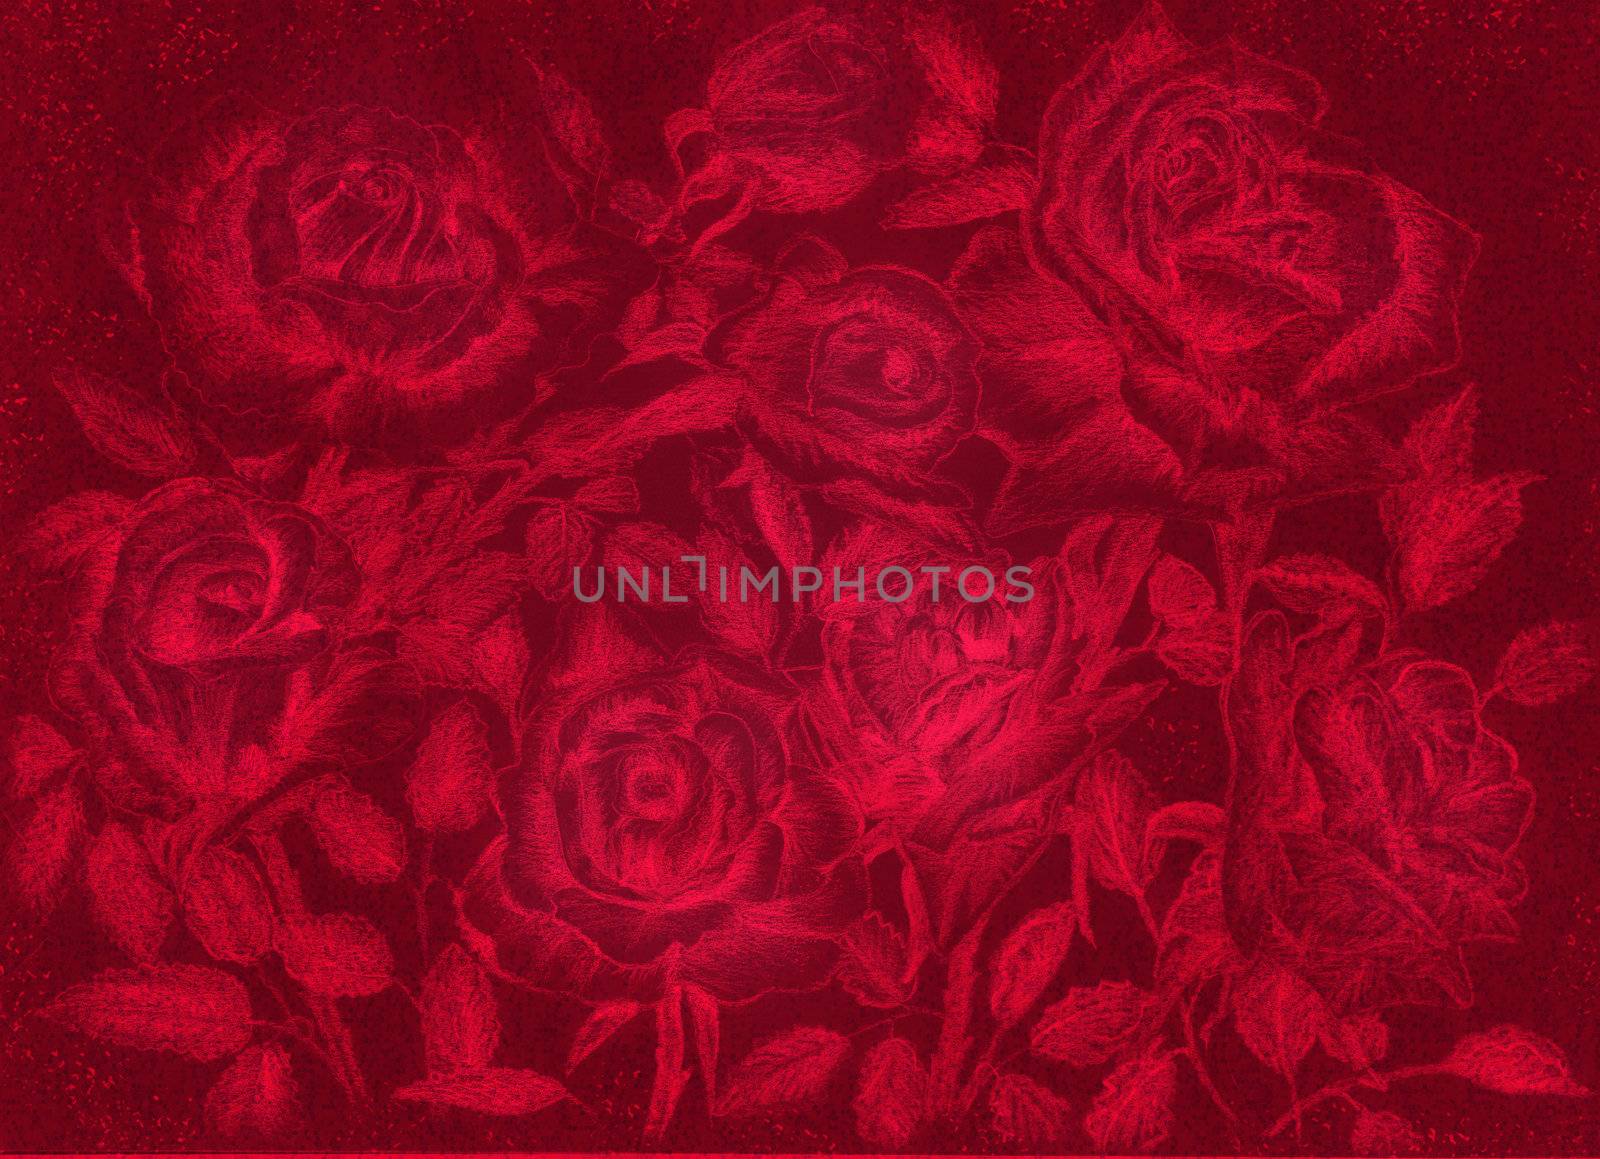 red roses pensil draw dark floral vintage background